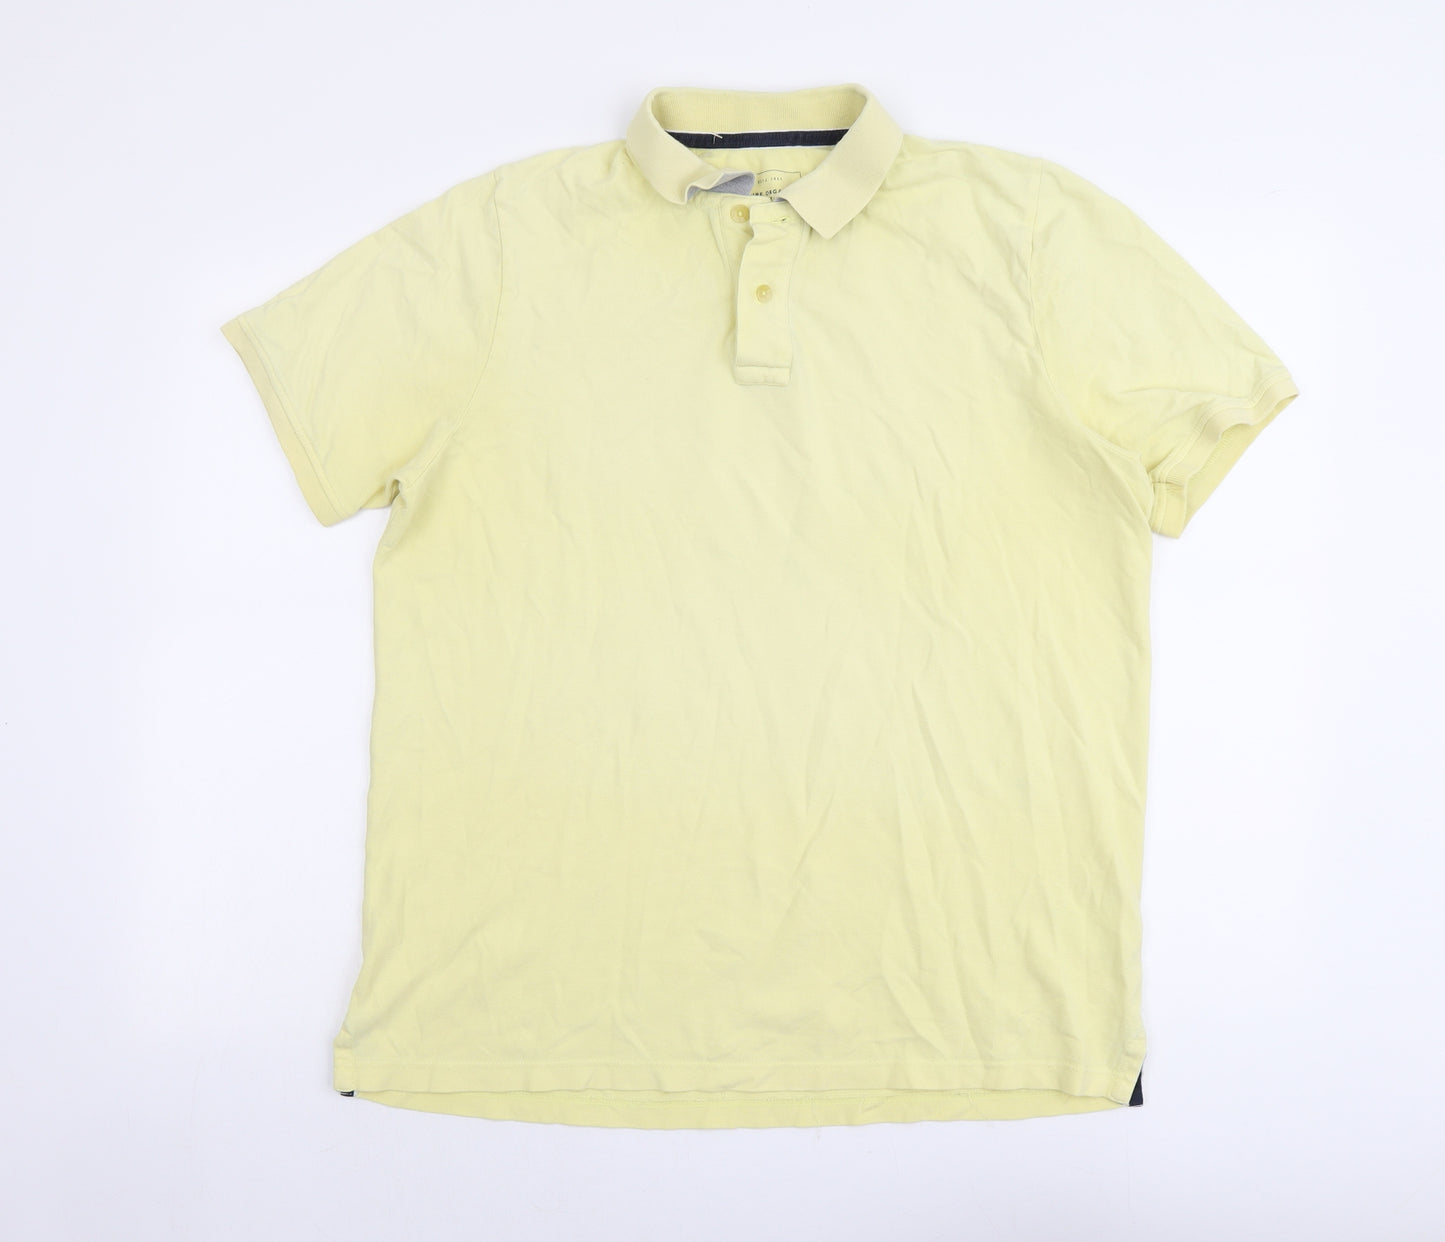 John Lewis Mens Yellow Cotton Polo Size XL Collared Button